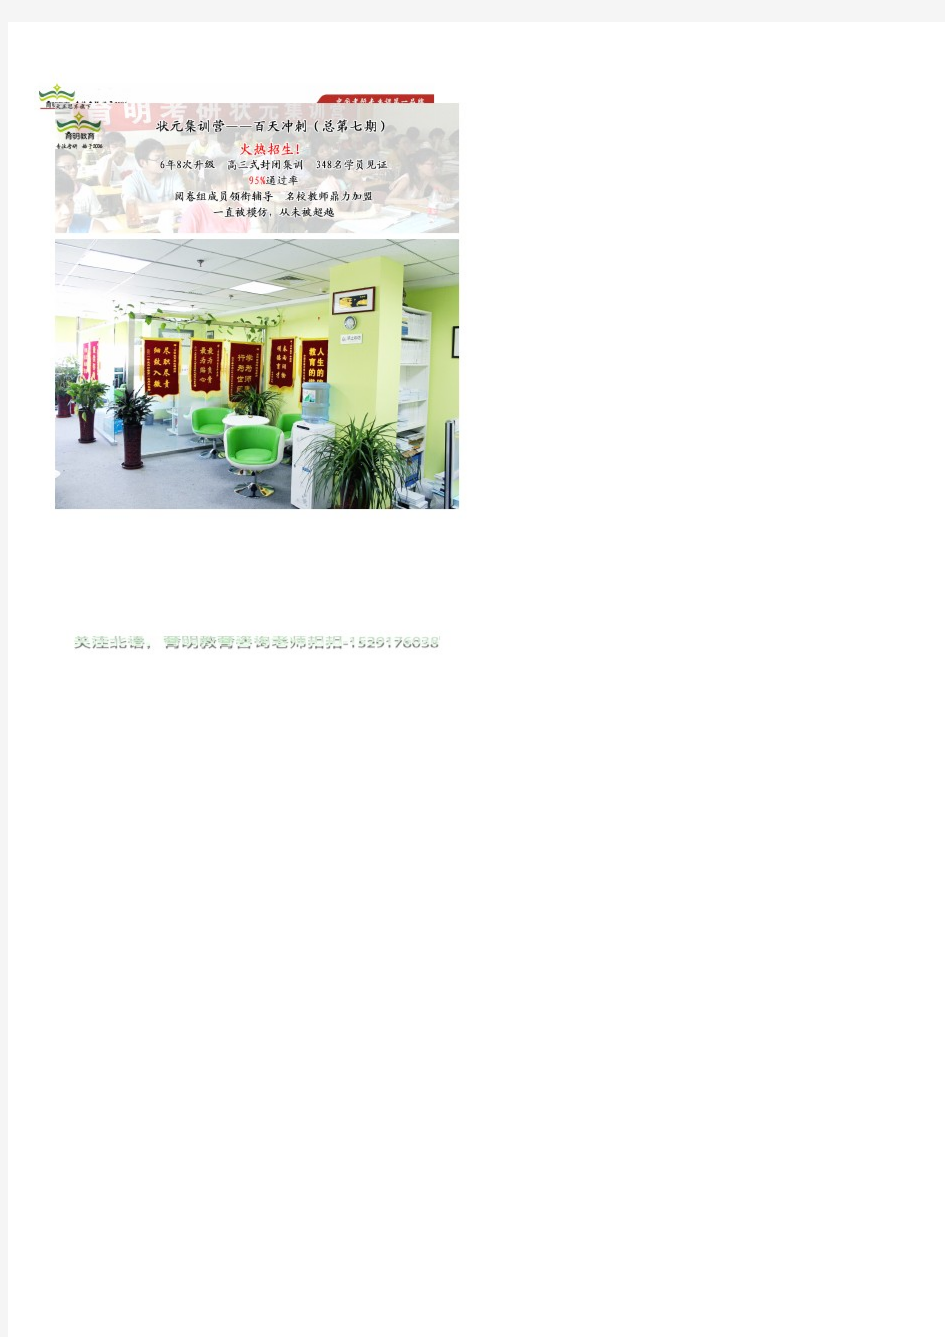 育明考研：汉语国际教育考研笔记(14)-中国文化要略-参考书、报录比、状元经验、招生简章 、真题